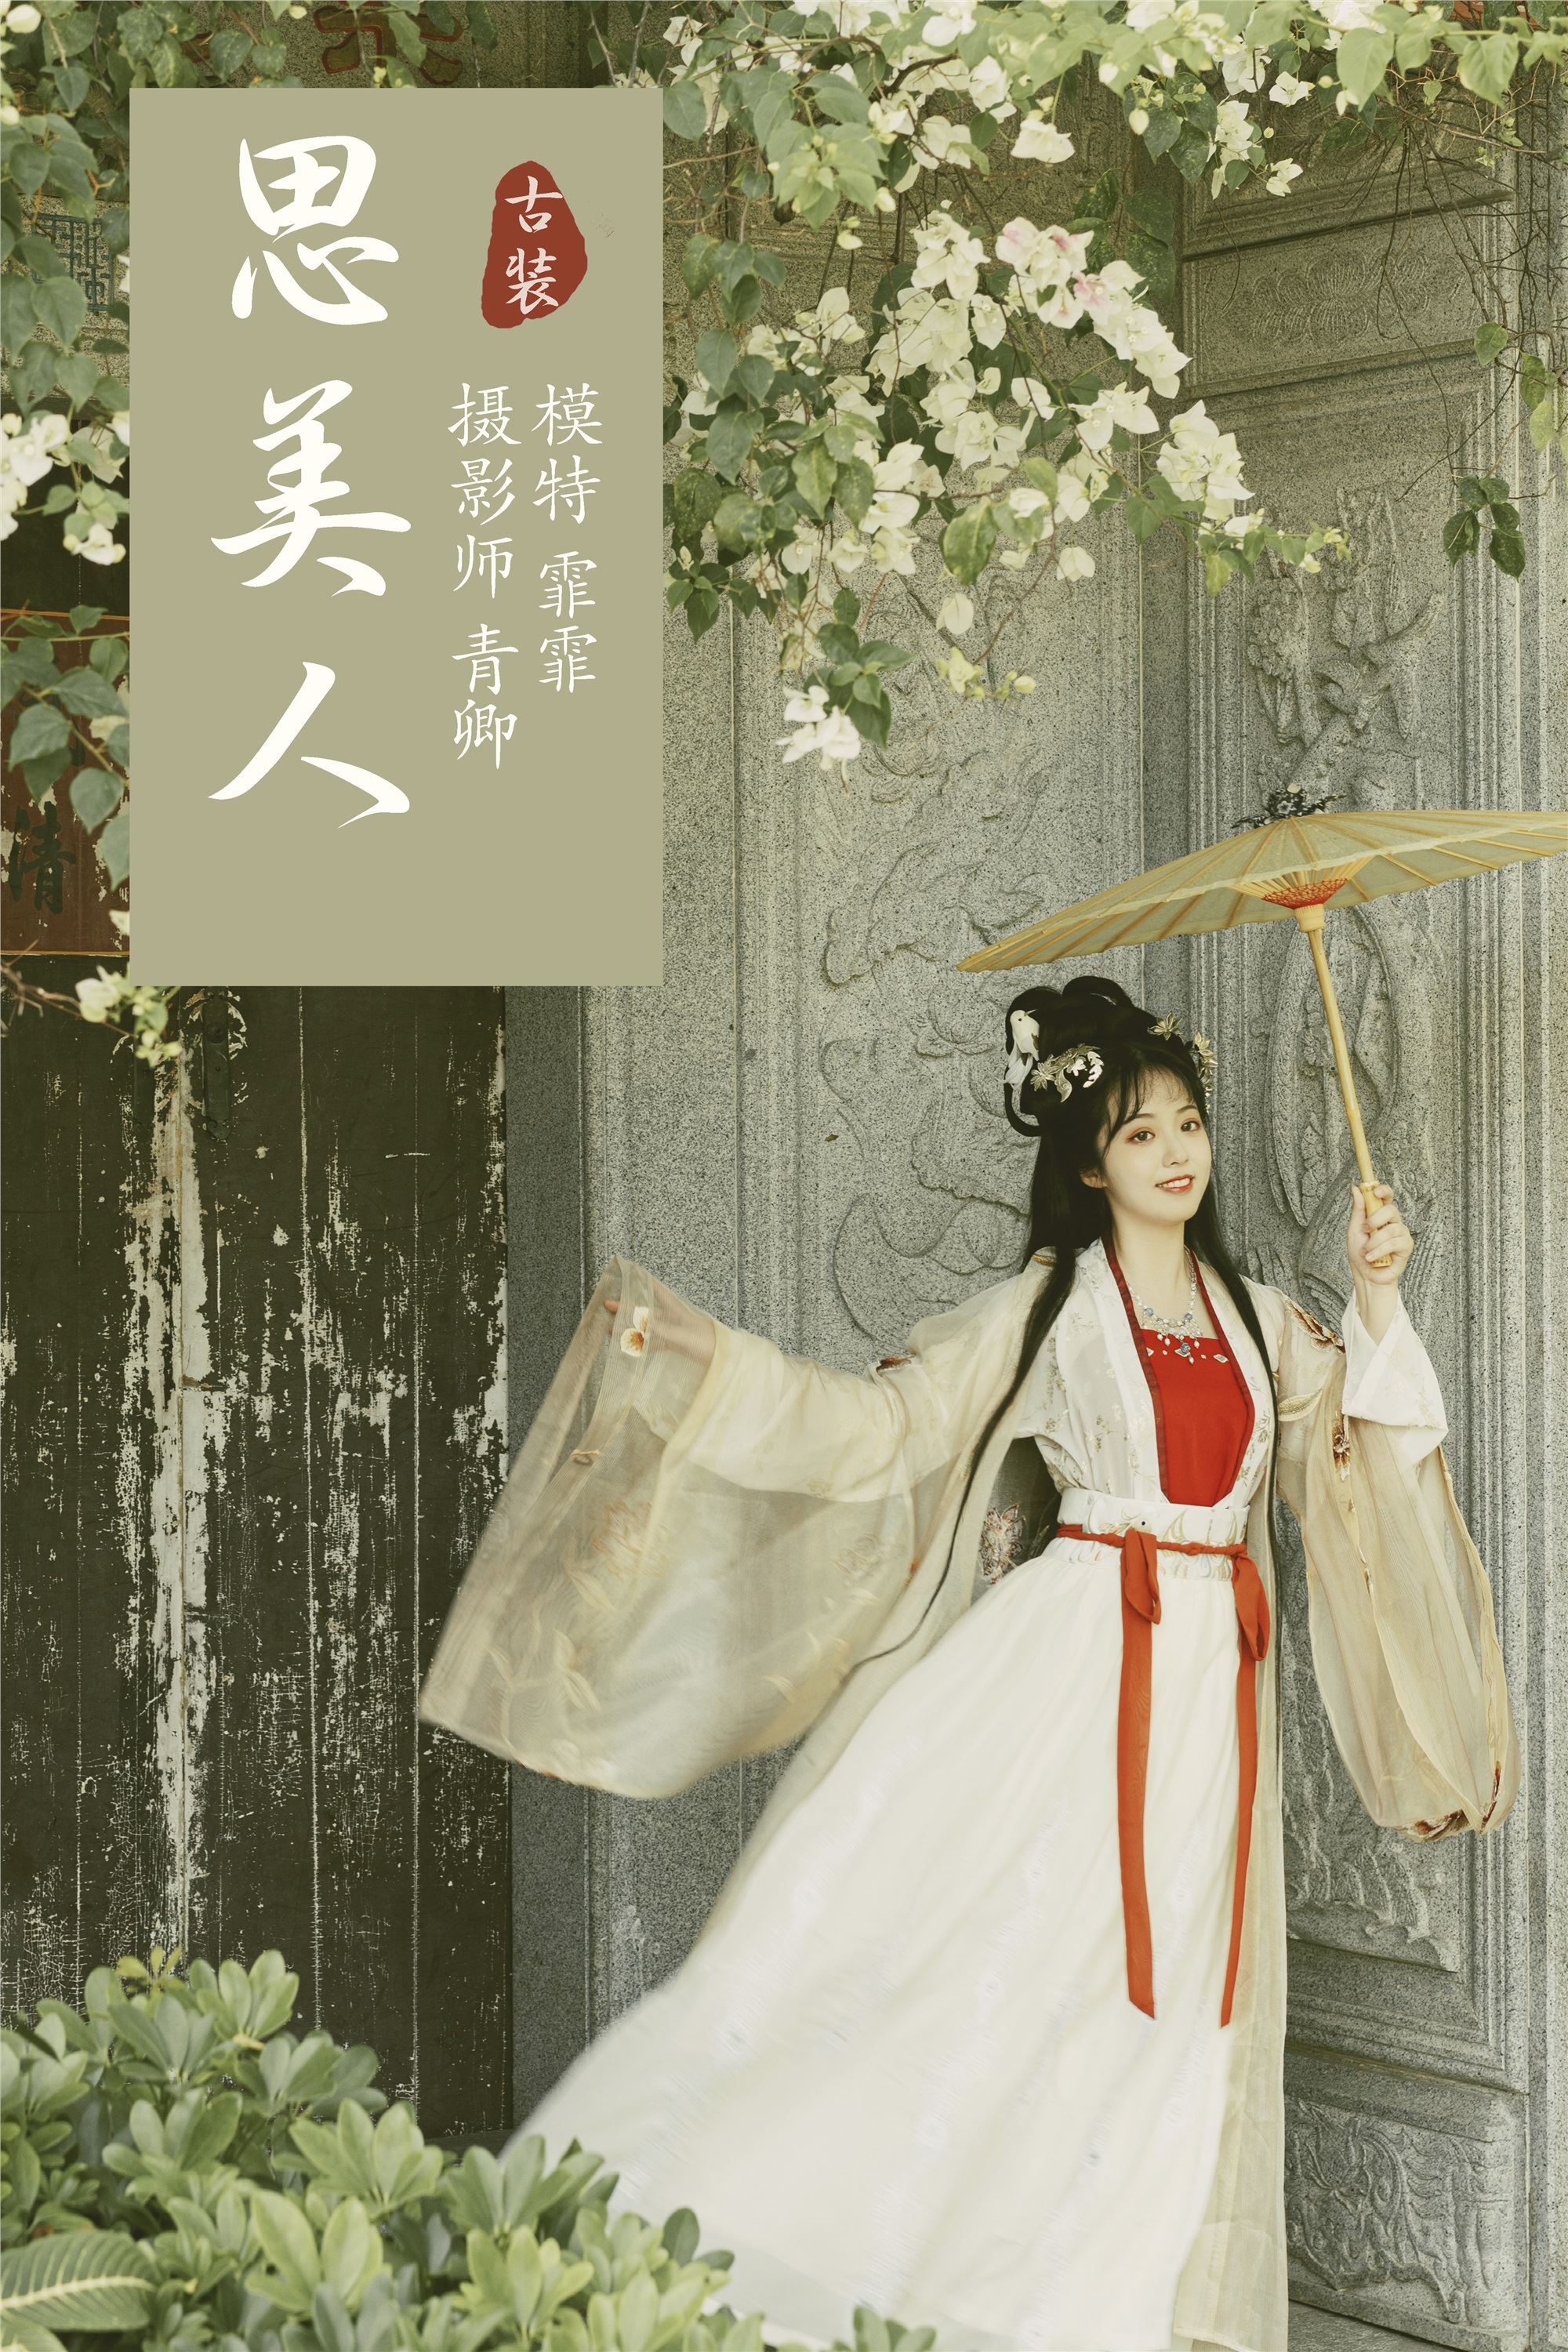 YITUYU Art Picture Language 2021.09.06 Si Mei Ren Fei Fei